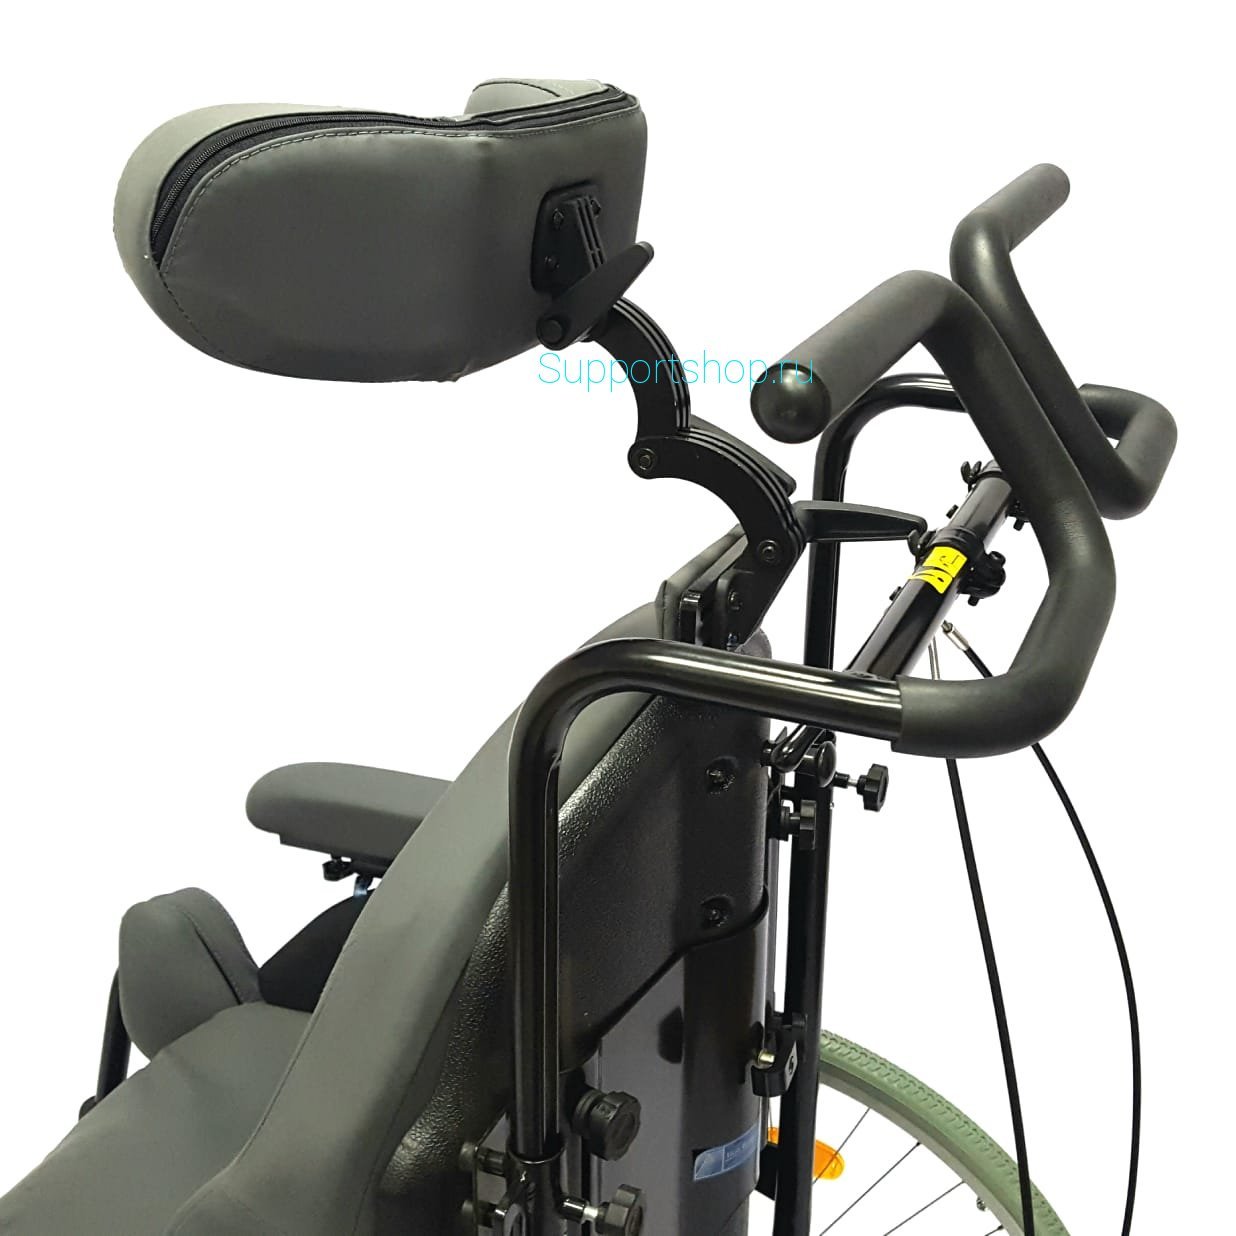 Кресло-коляска инвалидная многофункциональная с откидной спинкой Titan BREEZY Relax2 XL (LY-250)